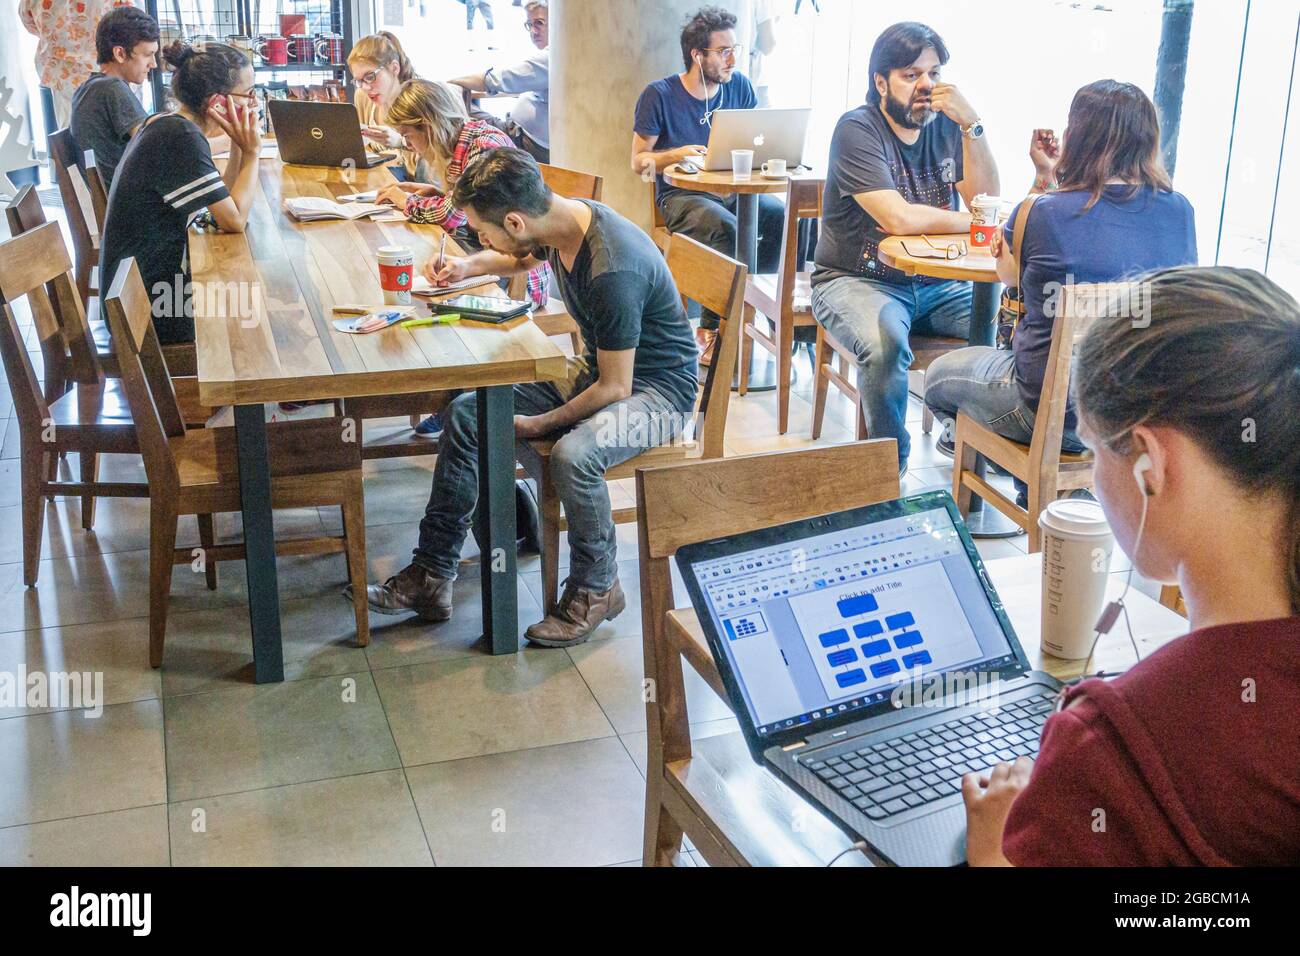 Argentina Buenos Aires Starbucks Coffee cafe coffee house, interno clienti Wi-Fi gratuito computer portatile utilizzando, ragazze ragazzi studenti teen teen Foto Stock